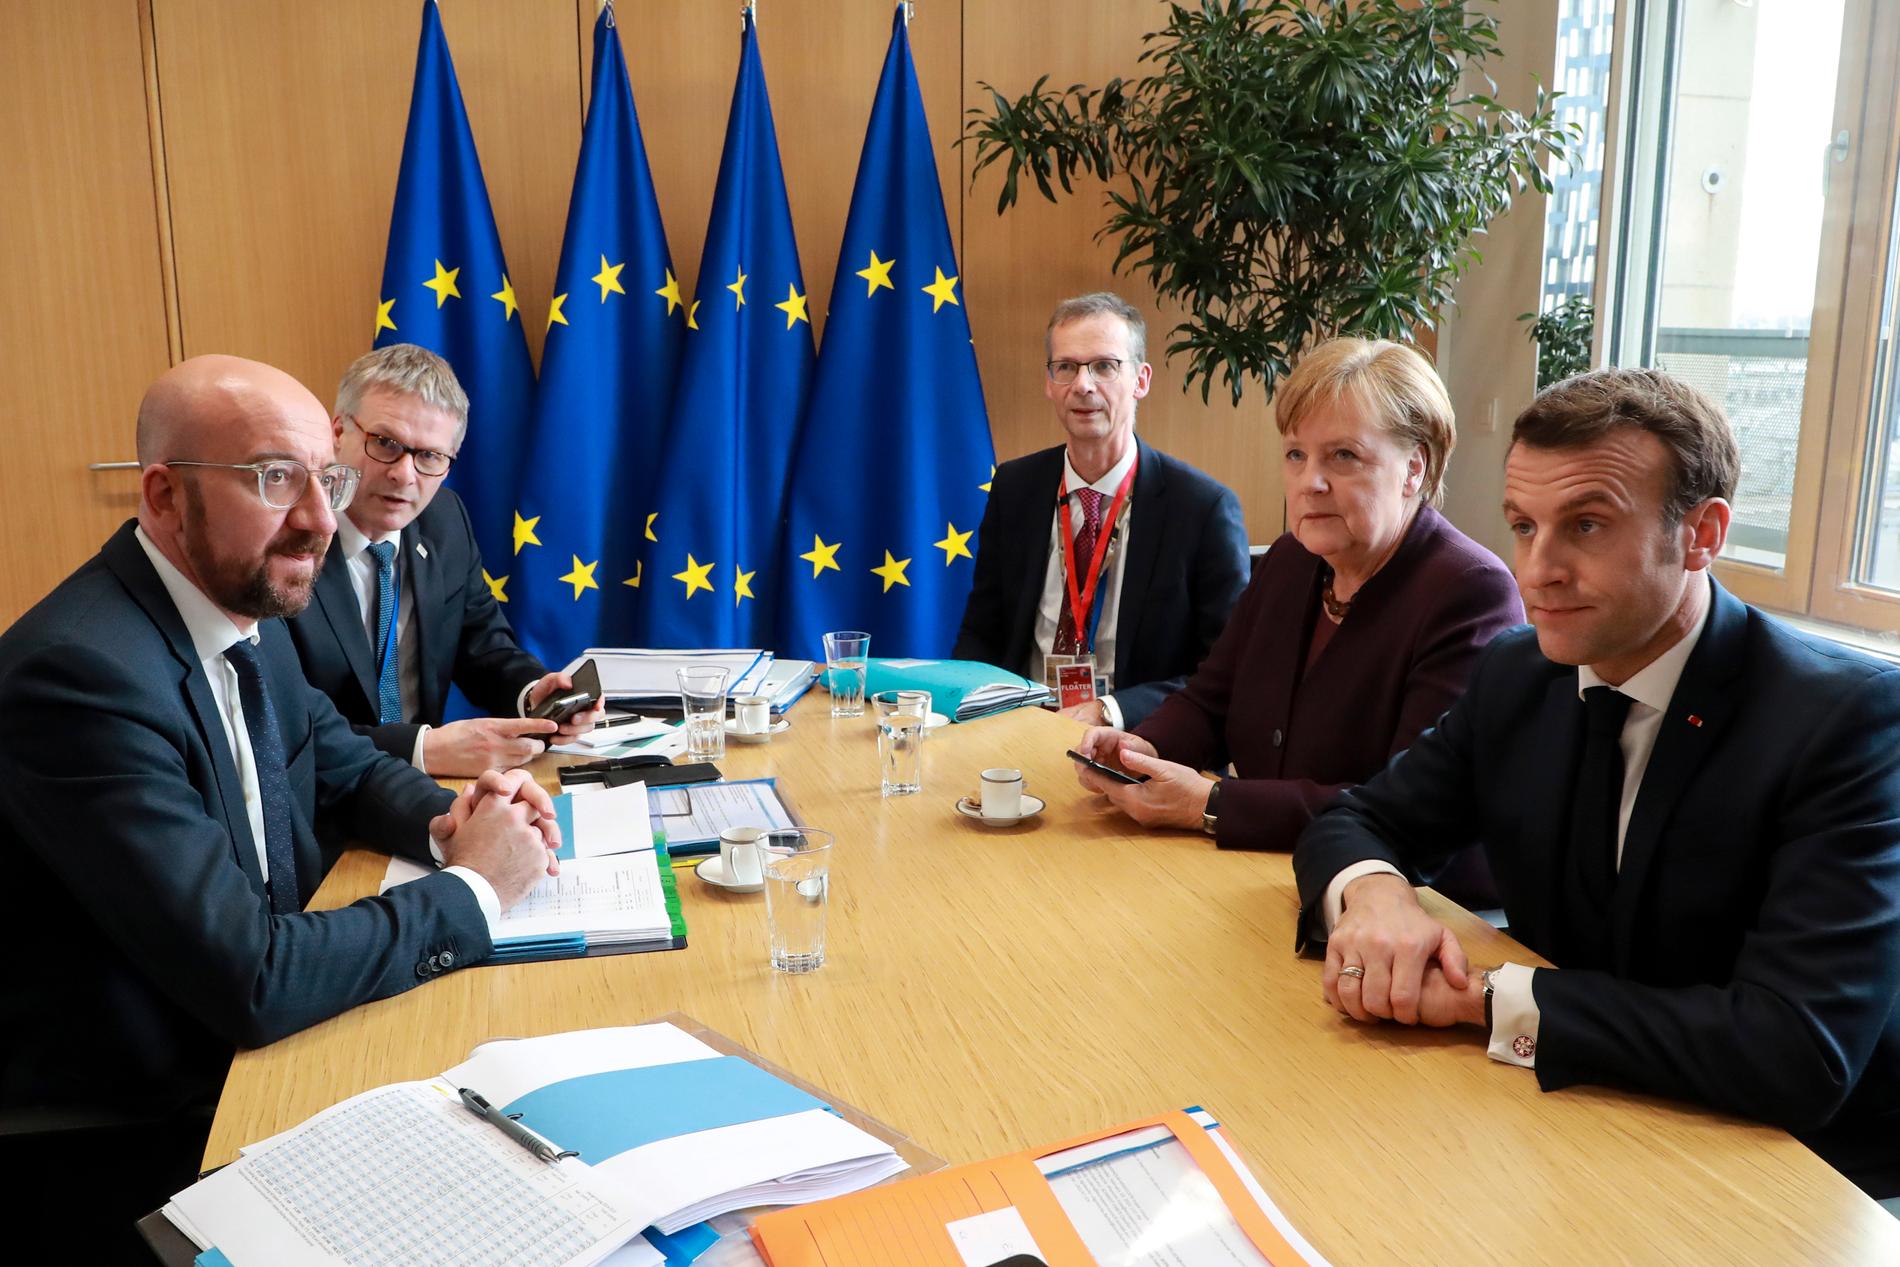 EU:s permanente rådsordförande Charles Michel i samtal med Tysklands förbundskansler Angela Merkel och Frankrikes president Emmanuel Macron inför EU:s budgettoppmöte i Bryssel.